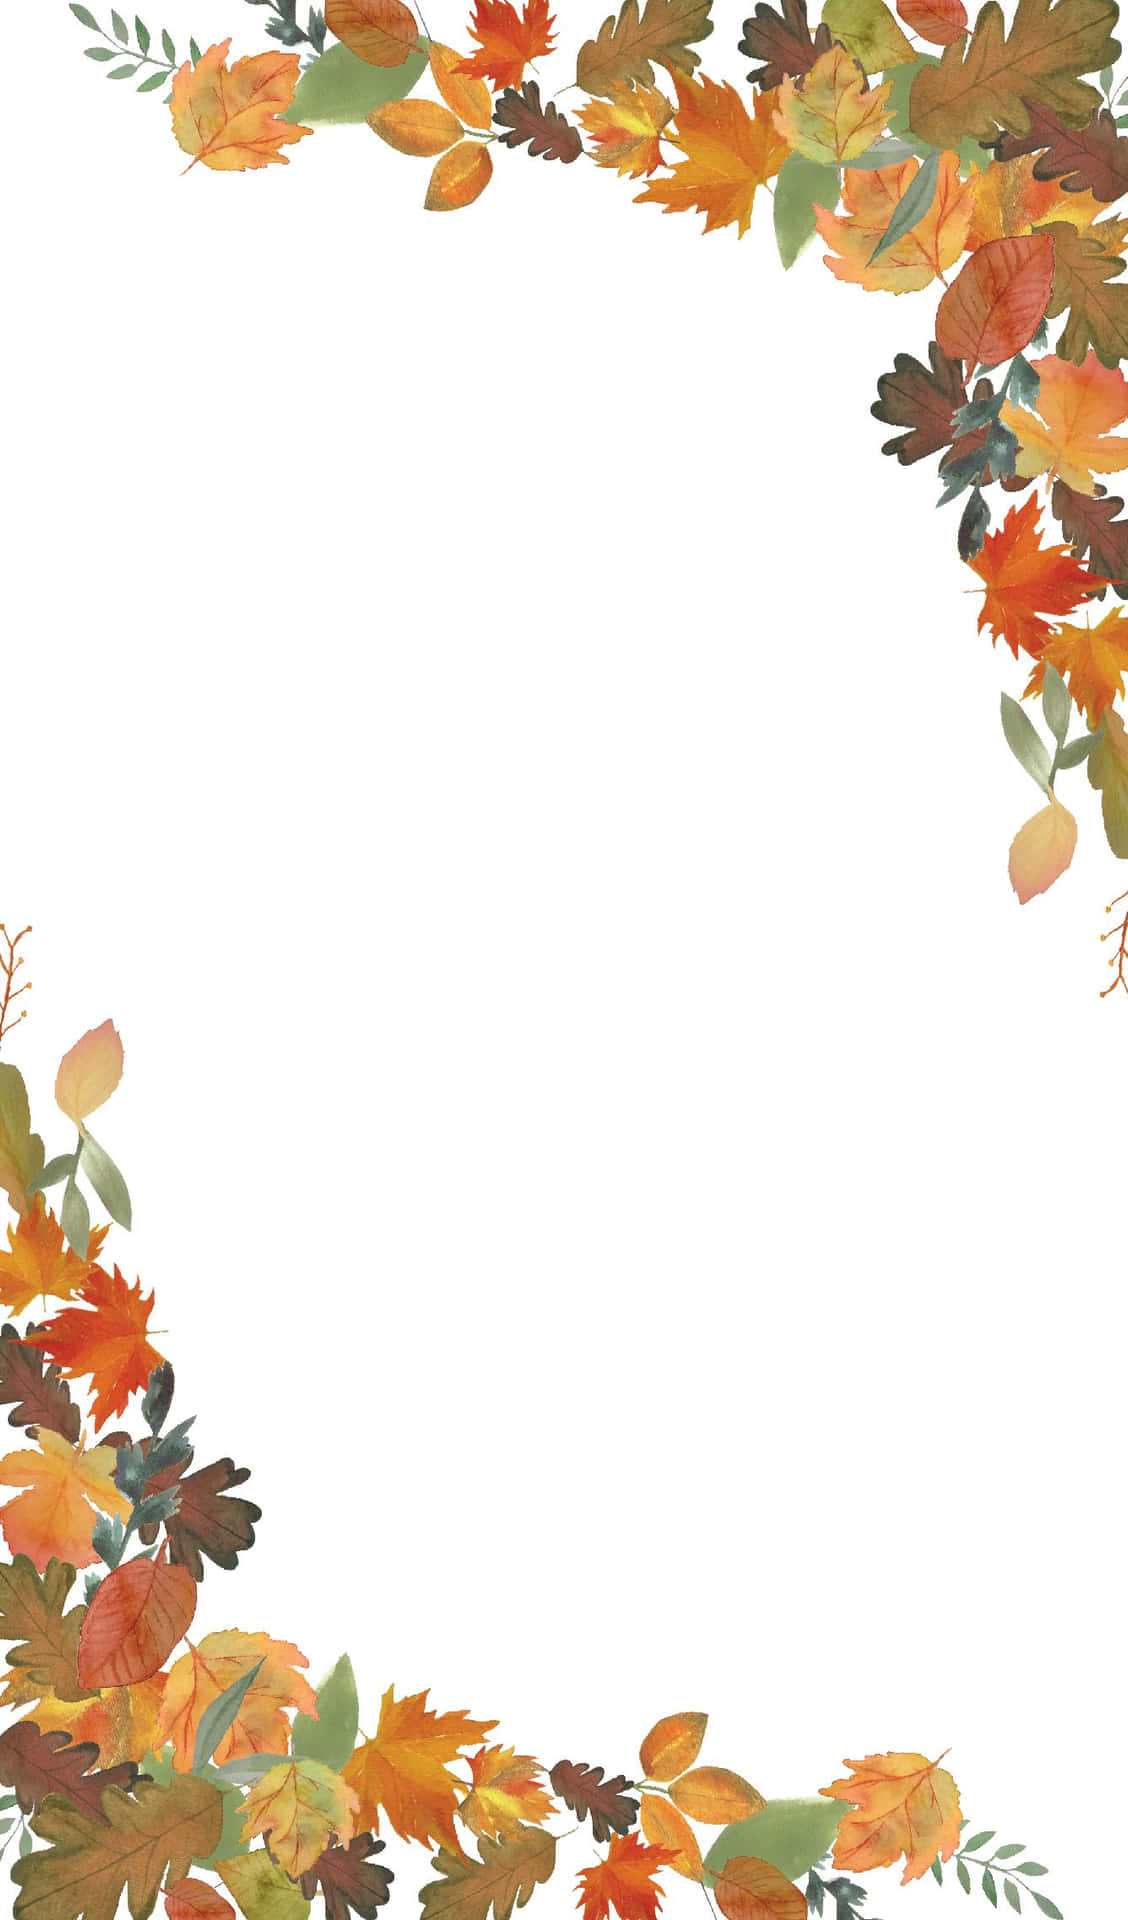 Captureuma Linda E Vibrante Estação Do Outono Com Esta Foto Nítida E Vibrante De Folhas De Outono Como Papel De Parede Para Computador Ou Celular. Papel de Parede